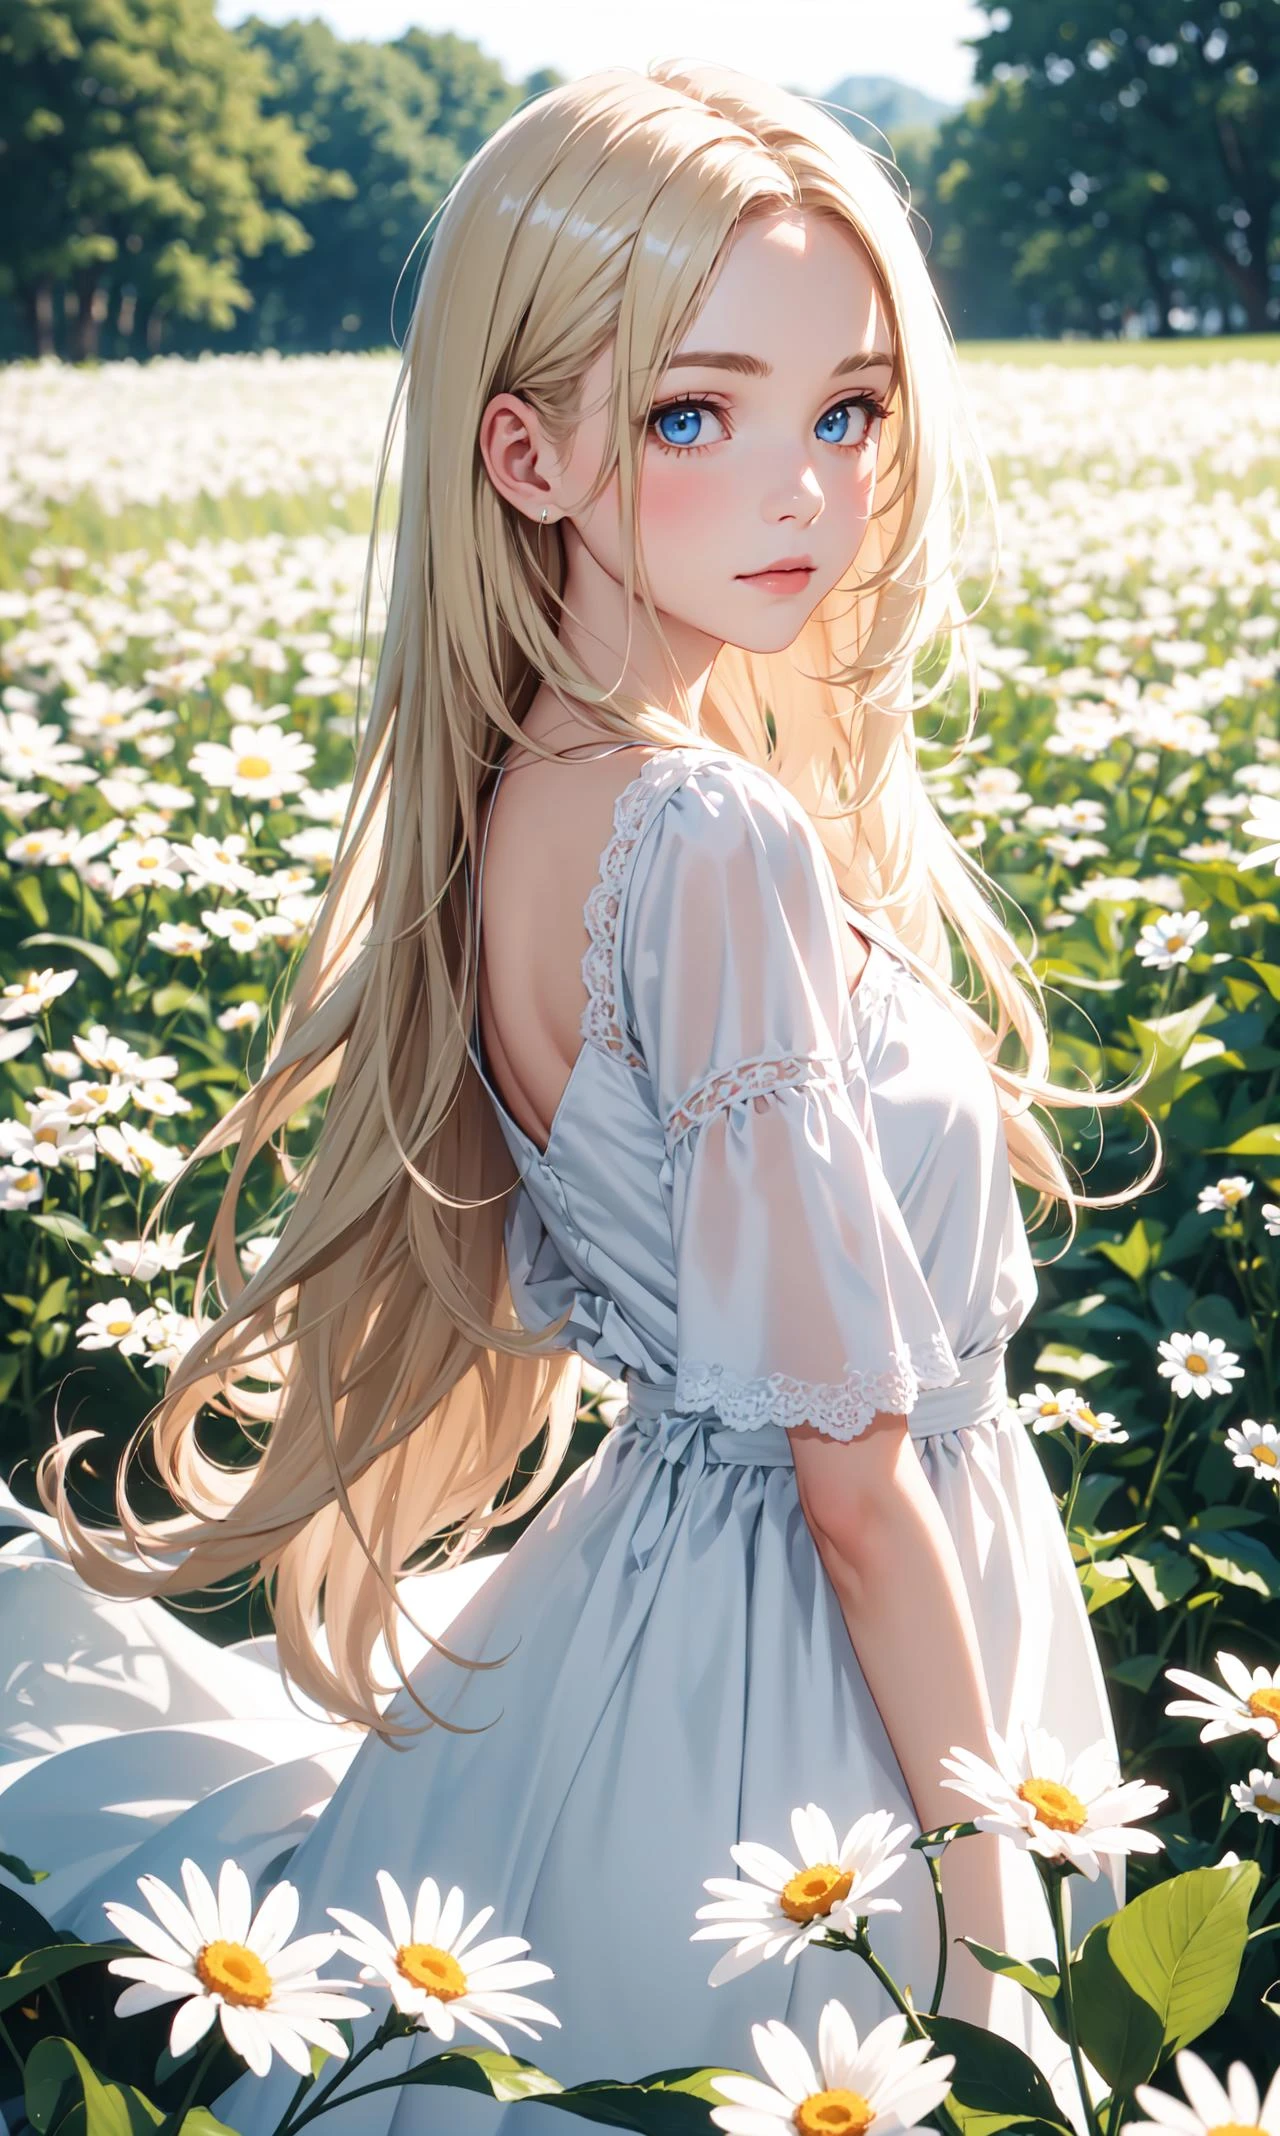 1 chica,en un campo de flores,flor blanca,mirando al espectador,blue eyes,pelo rubio,margarita,pelo largo,vestido blanco puro,